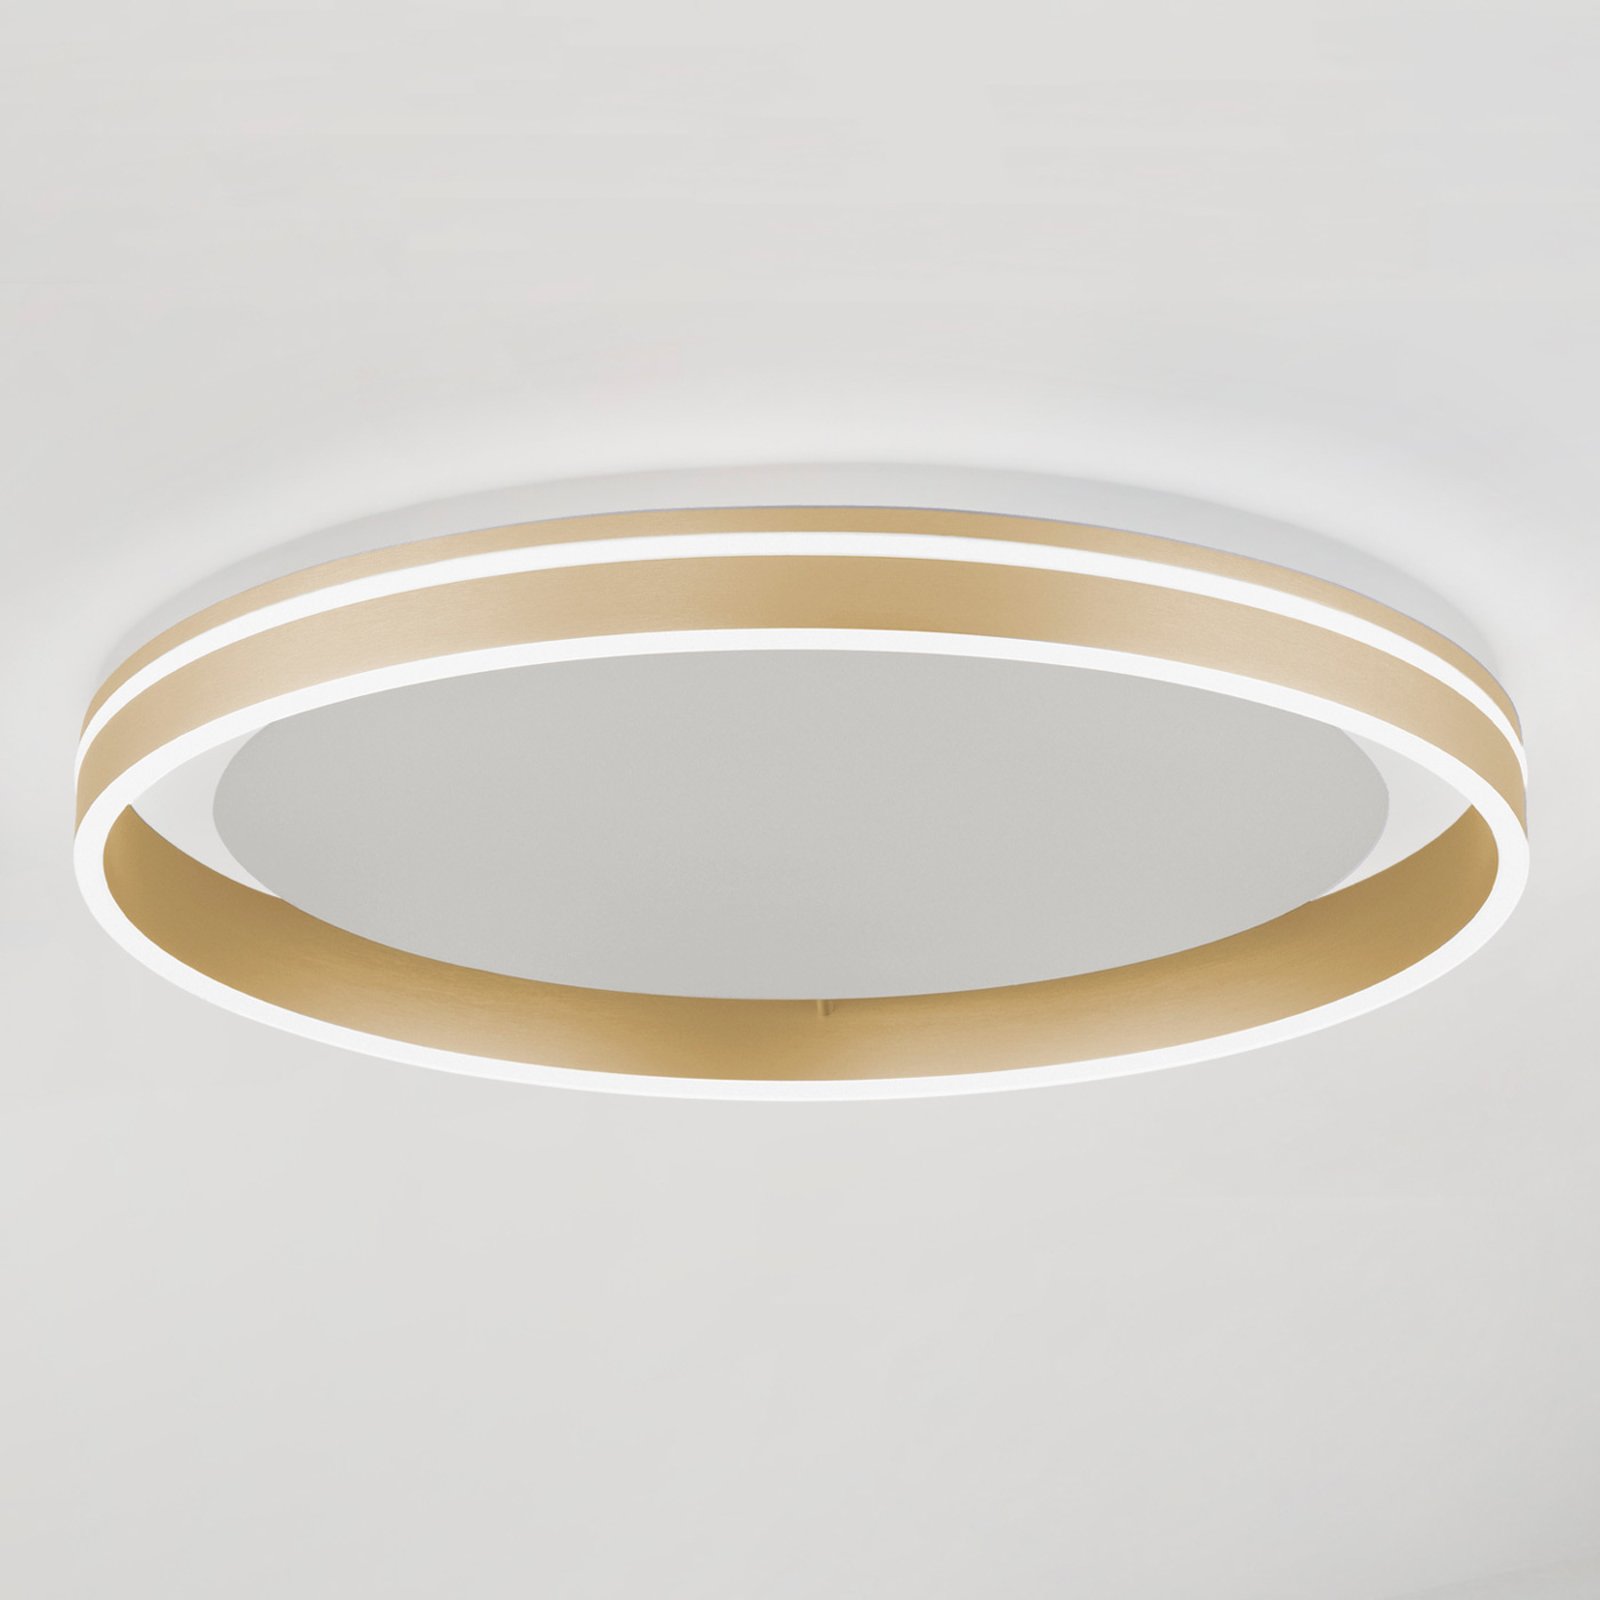 Paul Neuhaus Q-VITO LED stropní světlo, Ø 60cm